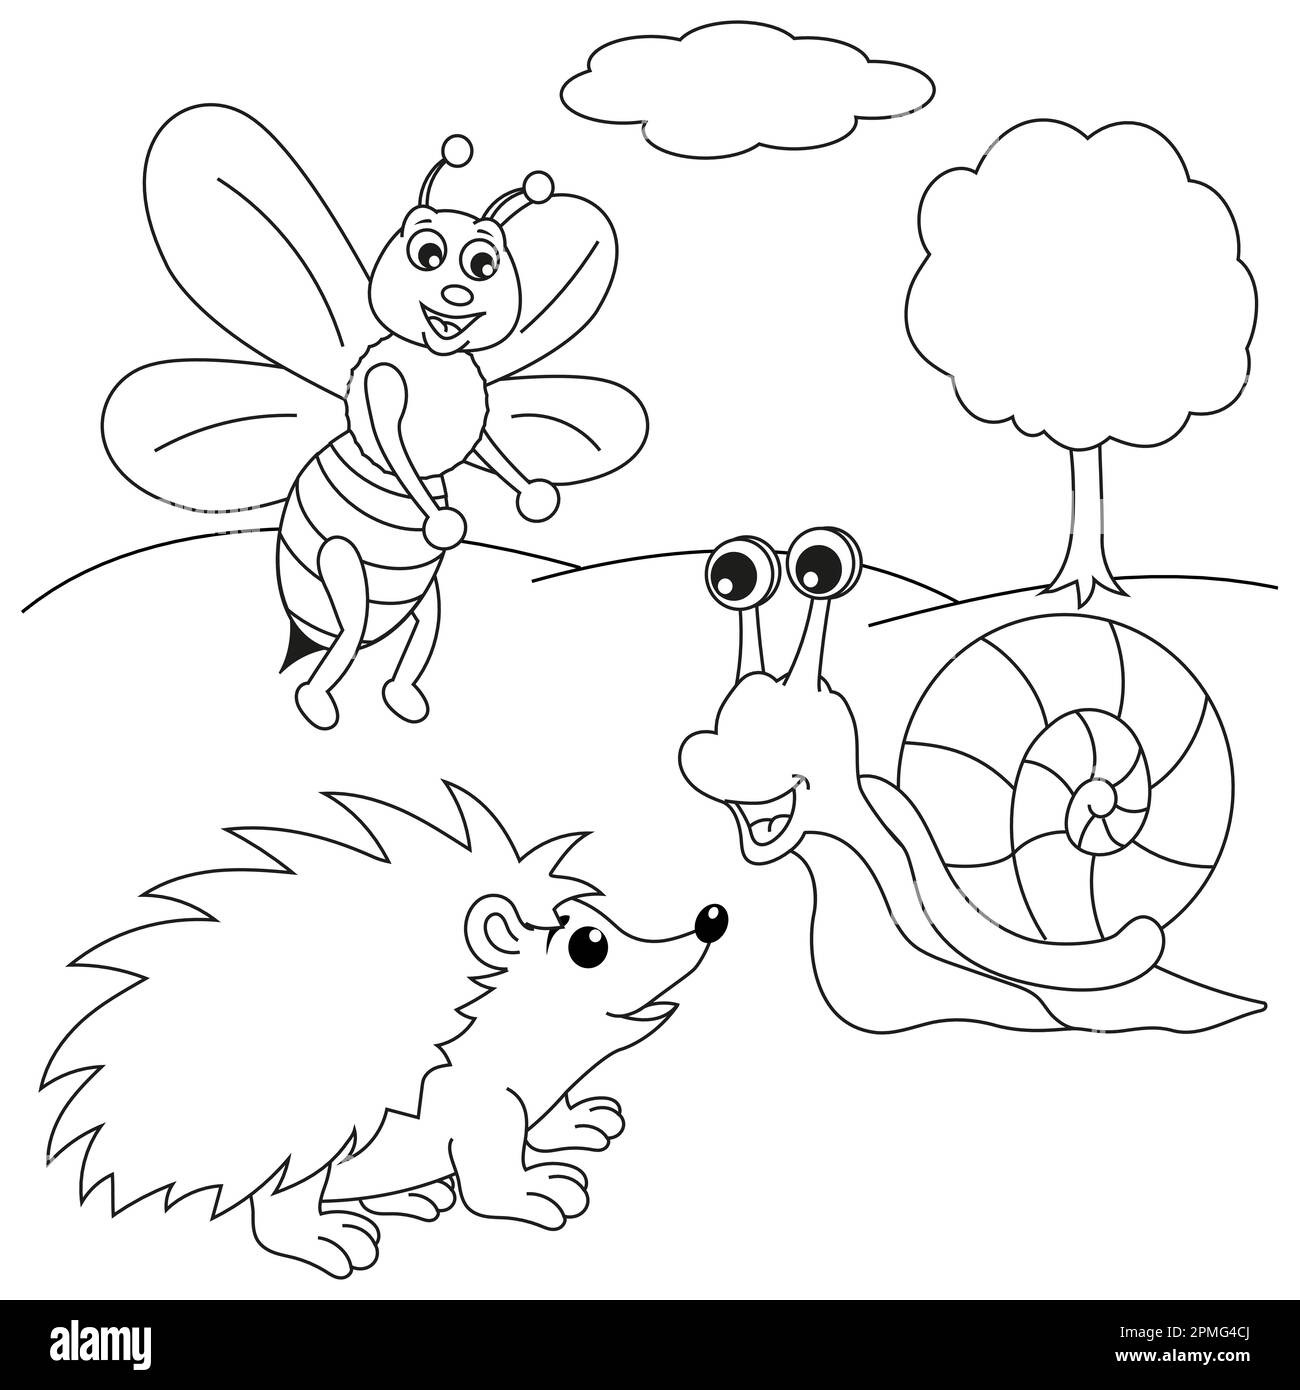 L'ape, la lumaca e l'hedgehog stanno parlando Illustrazione Vettoriale